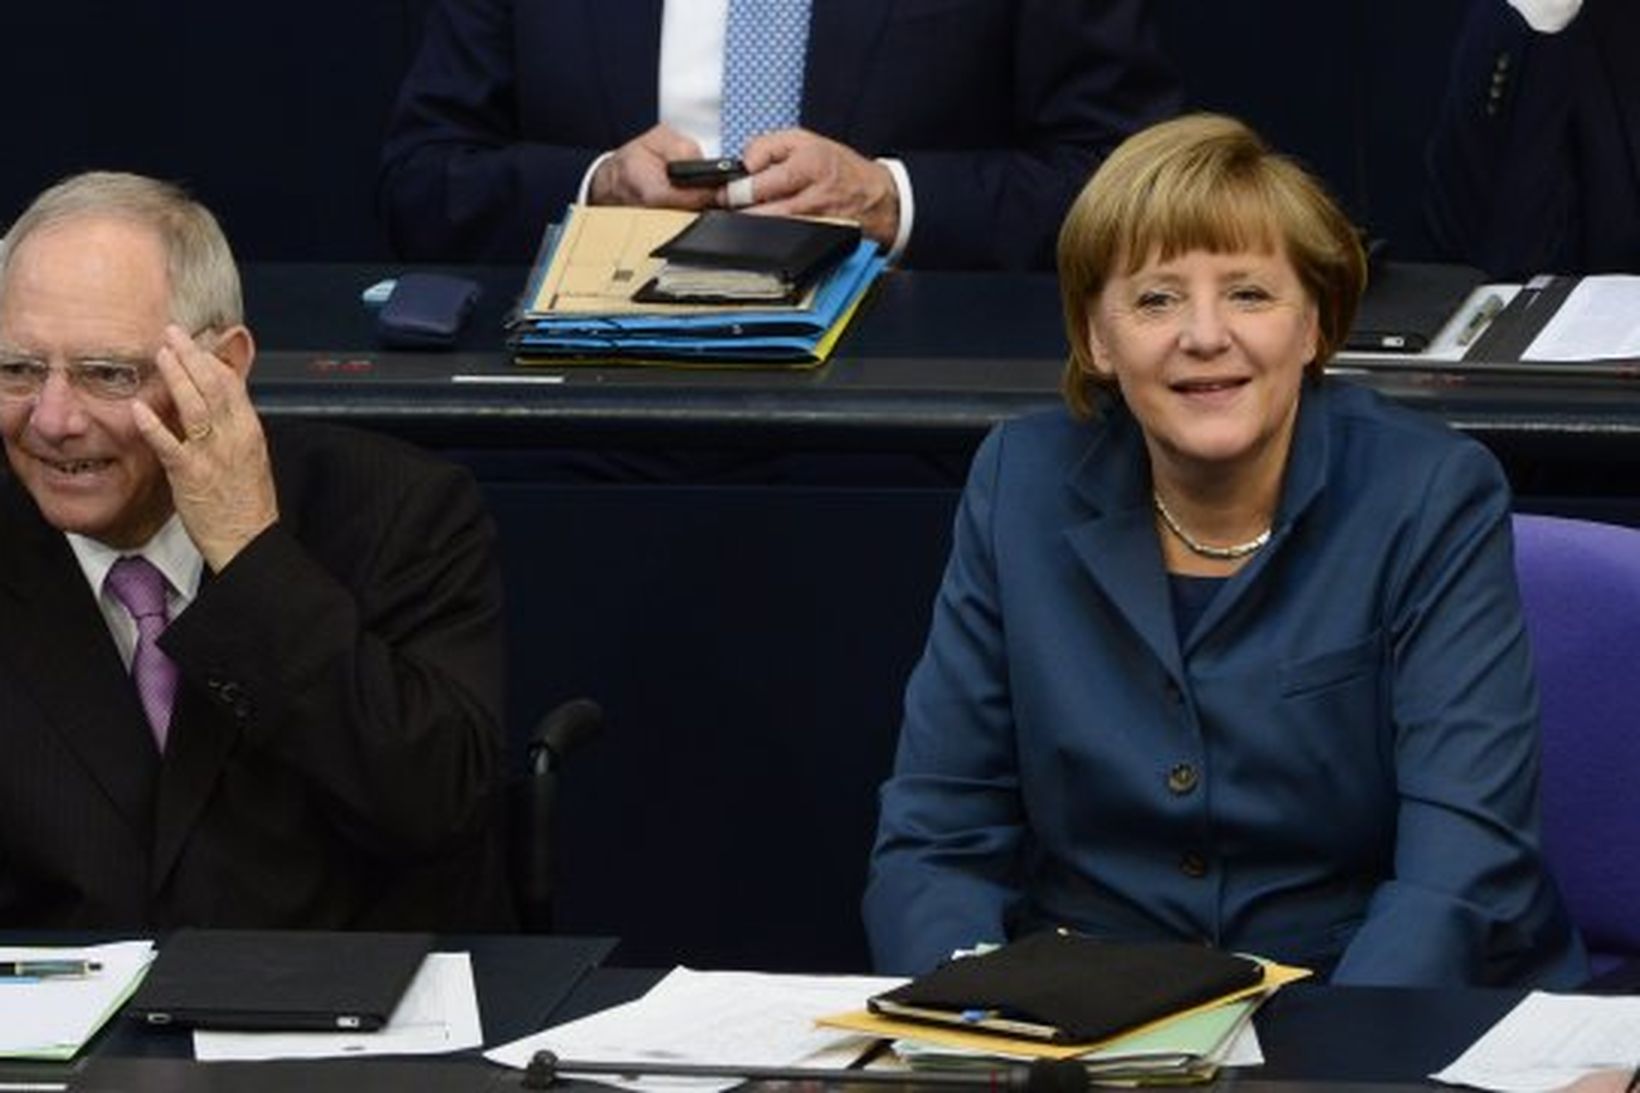 Wolfgang Schaeuble ásamt Angelu Merkel kanslara Þýskalands.